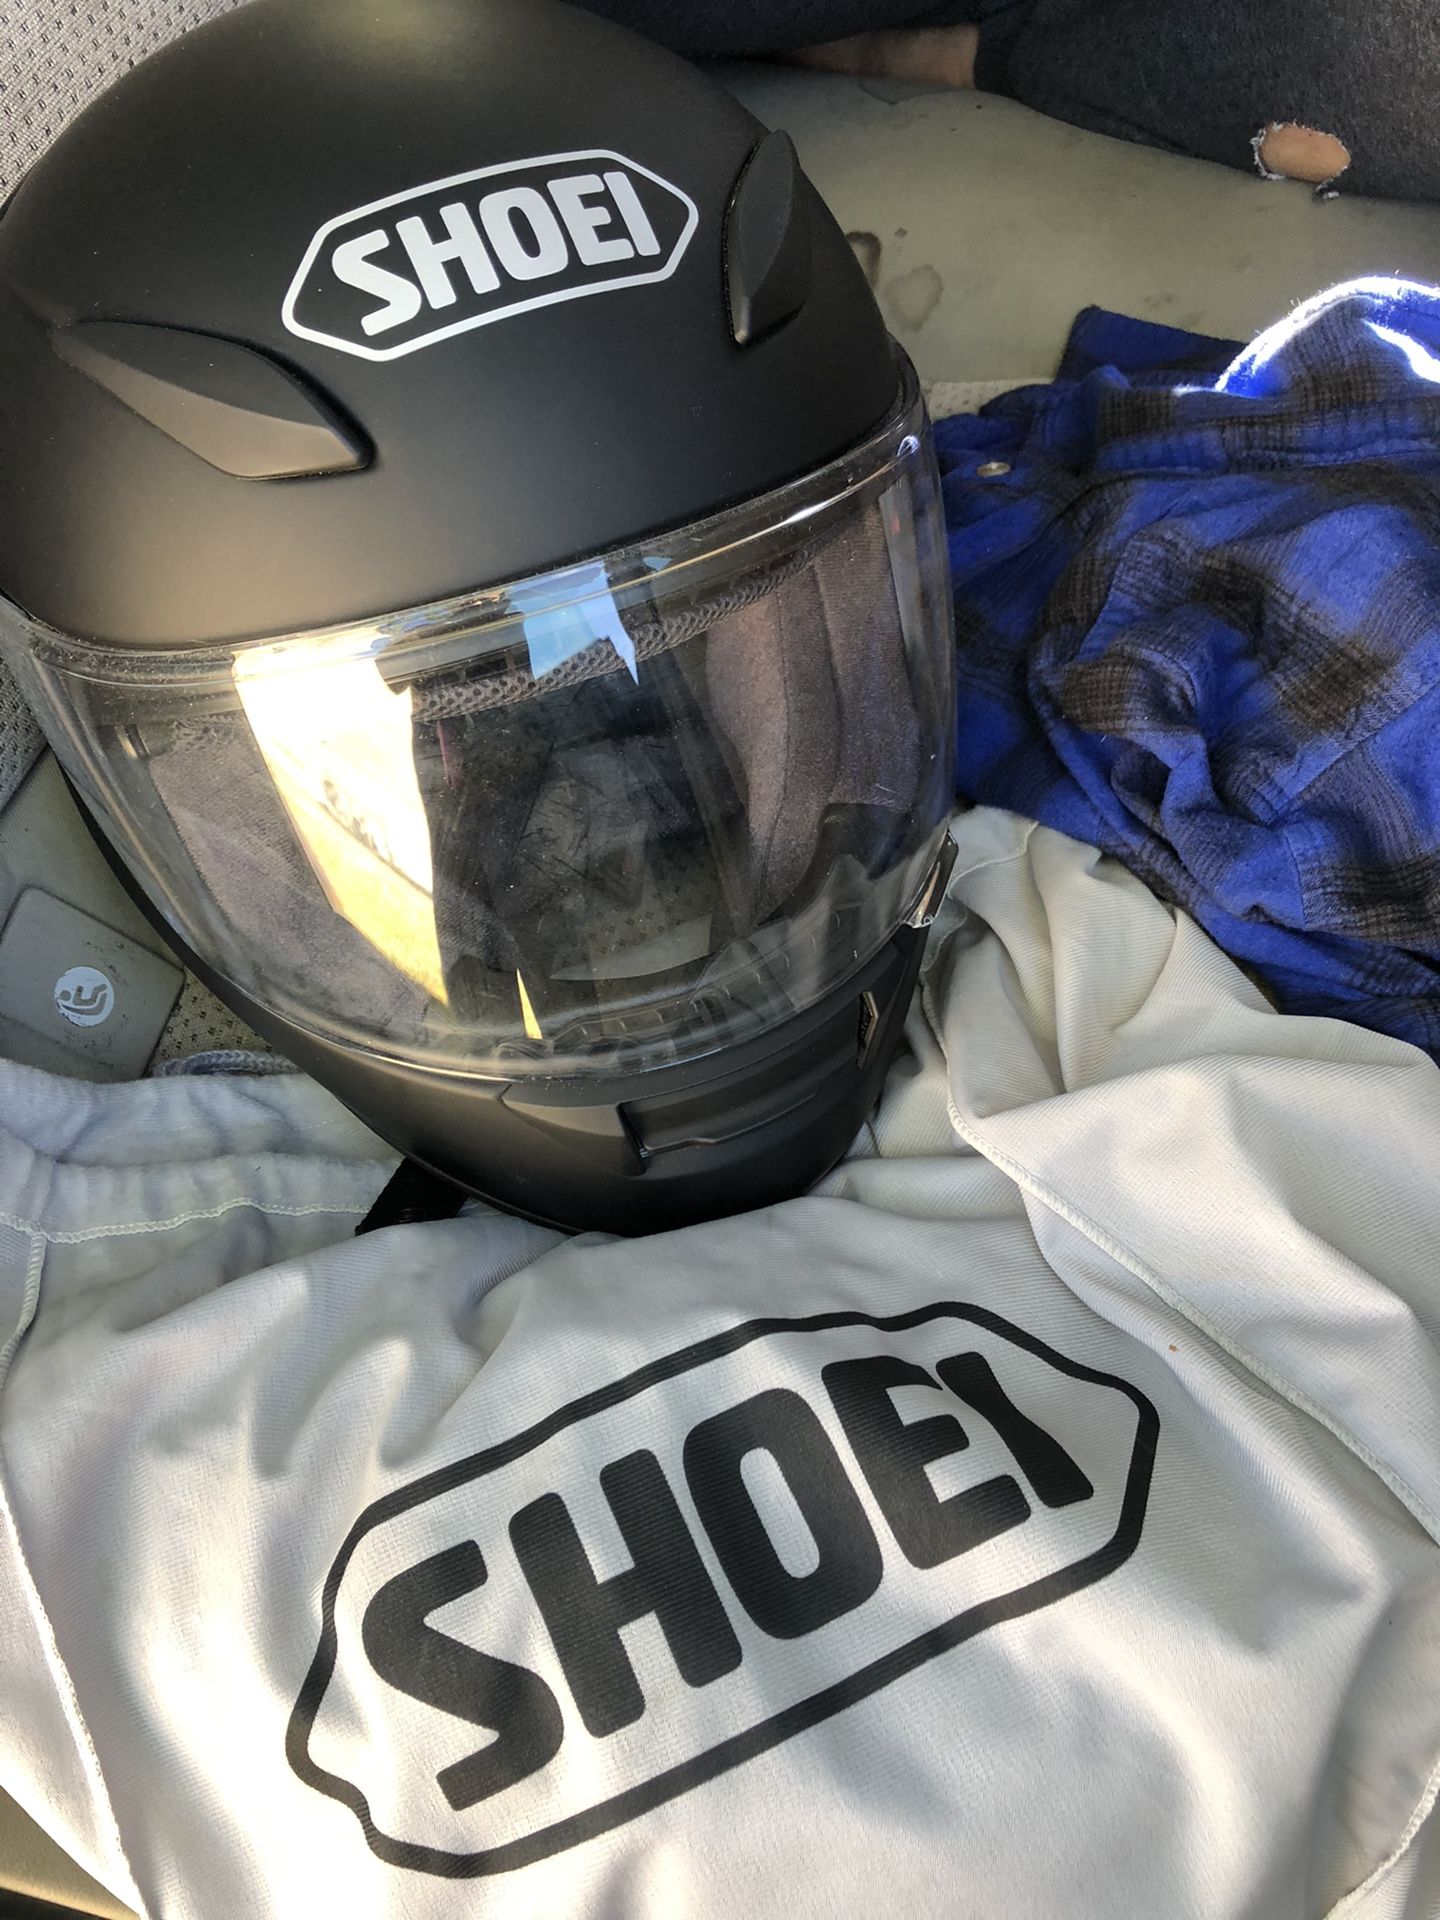 Never used. Shoel RF-1100 motorcycle helmet. Size medium.